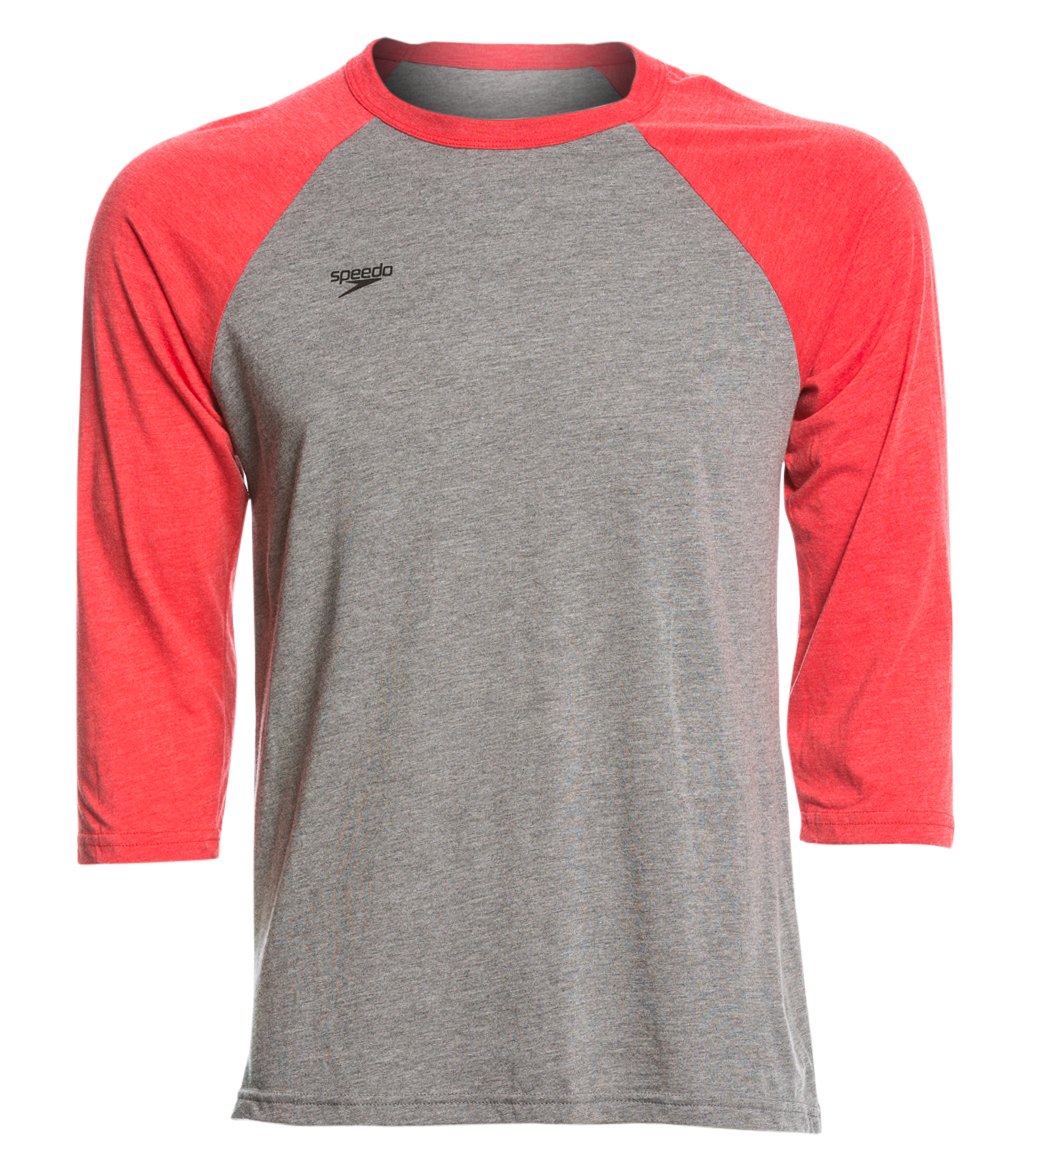 Speedo Men's Baseball Tee Shirt - Red Xl Cotton/Polyester - Swimoutlet.com